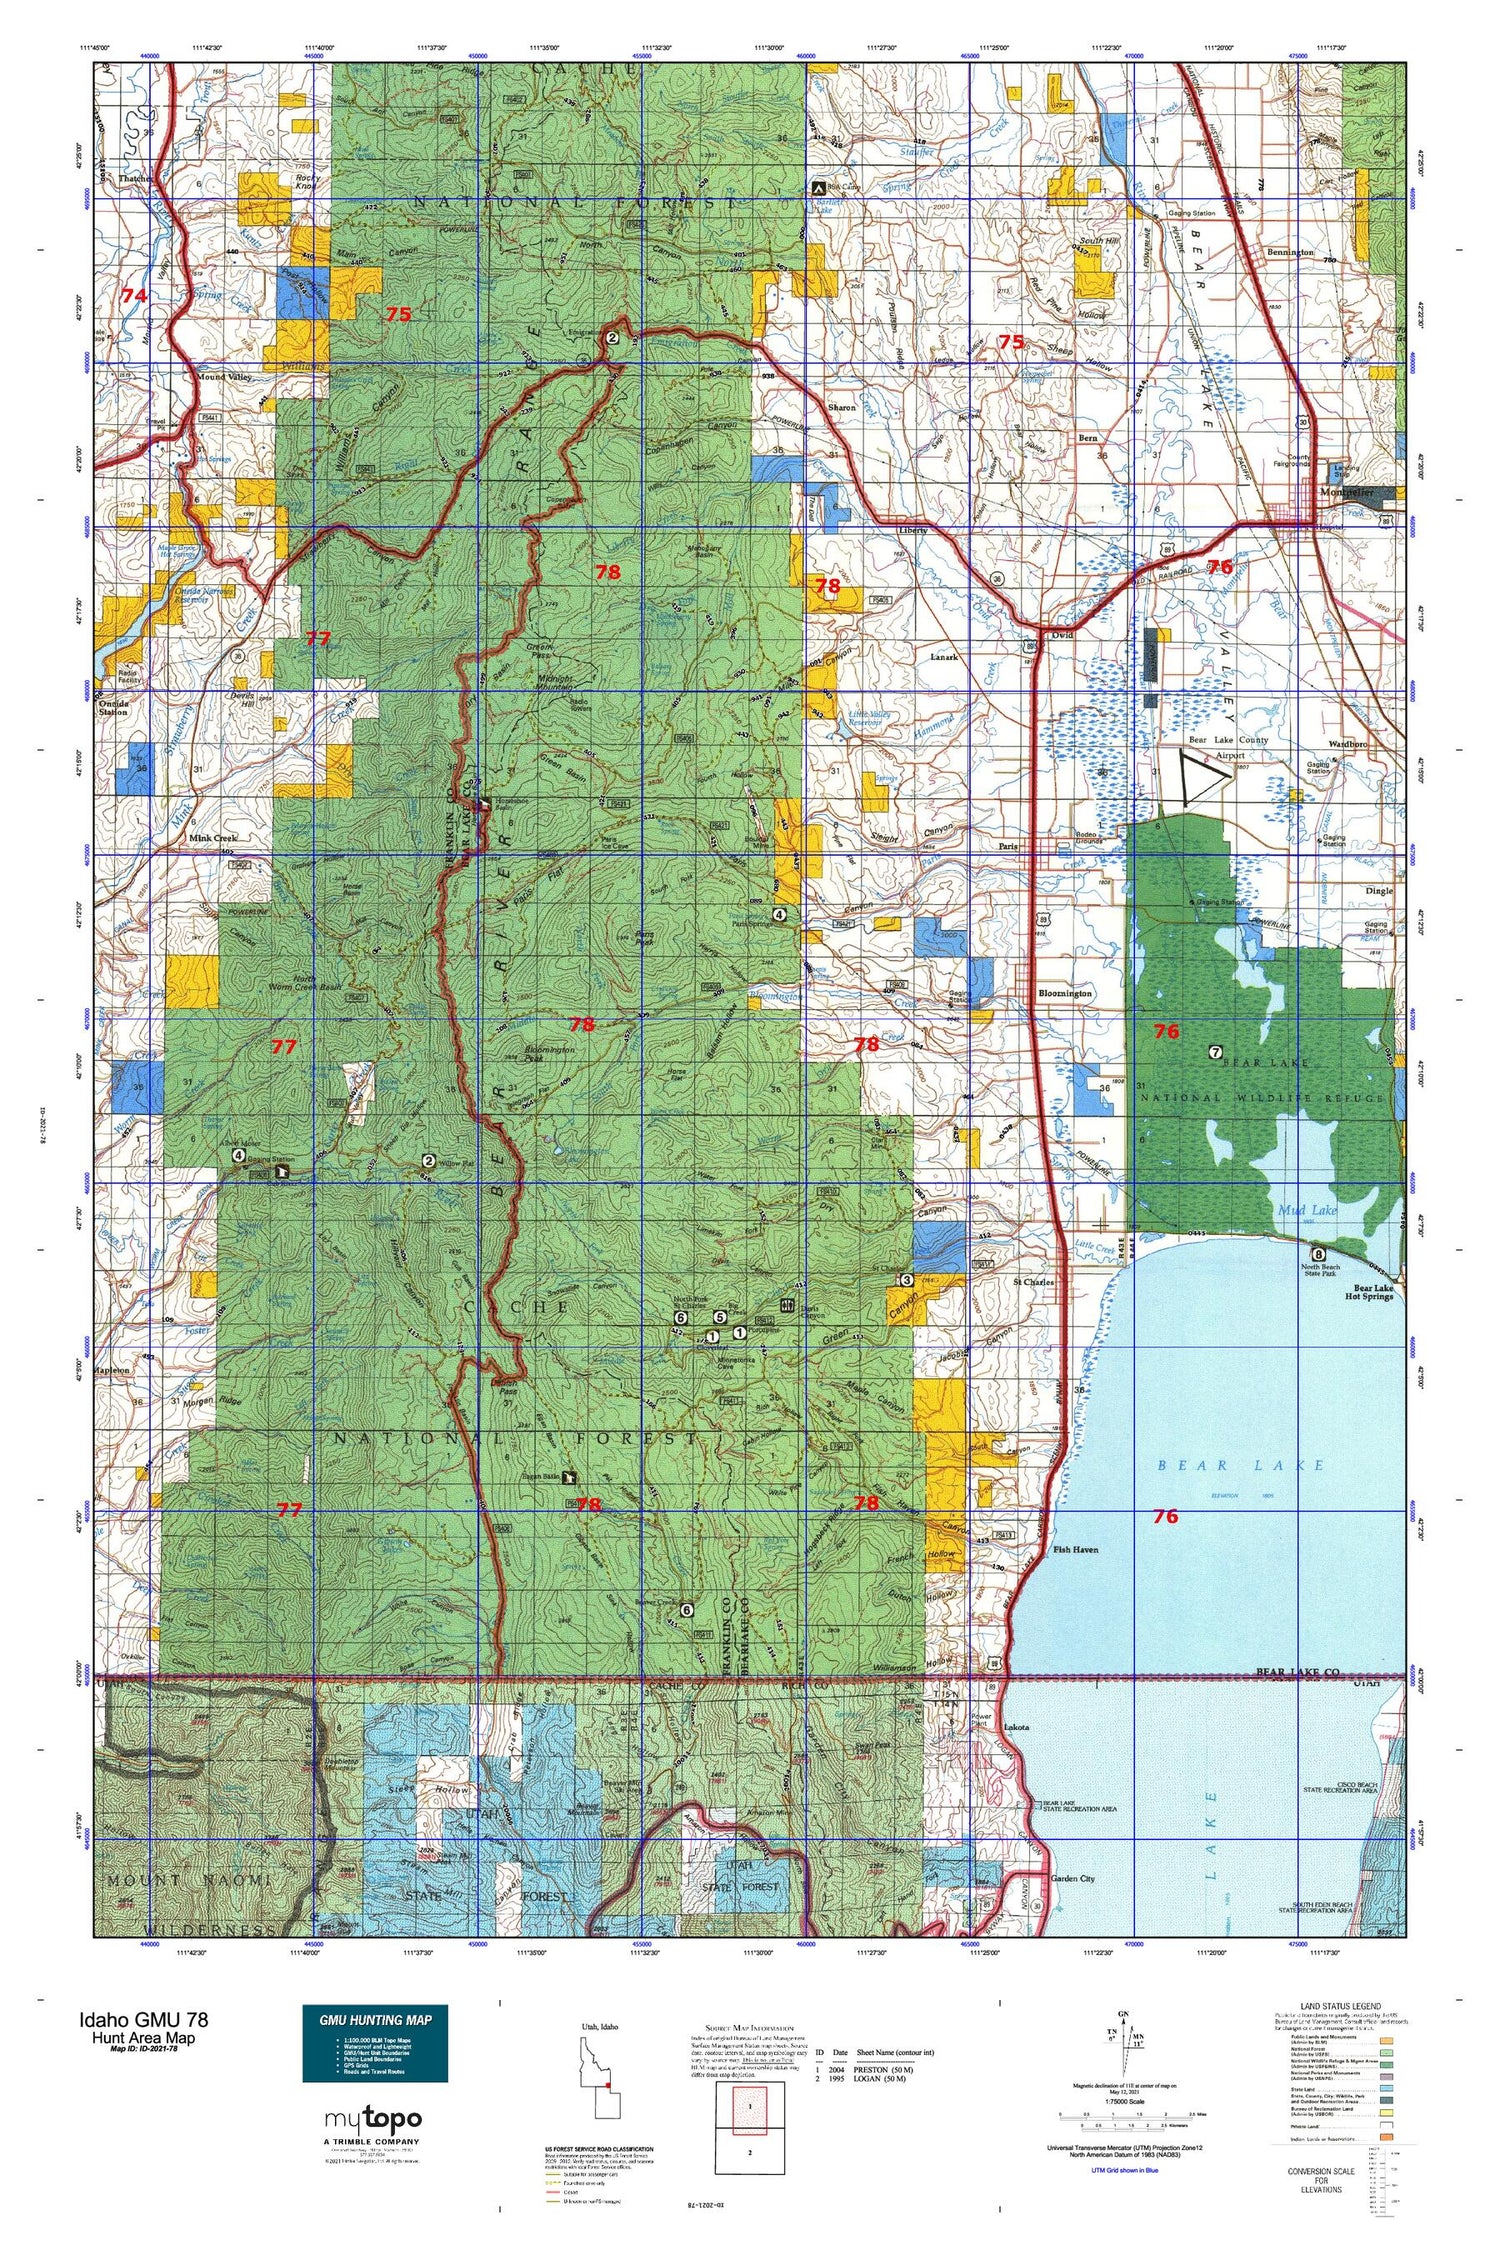 Idaho GMU 78 Map Image